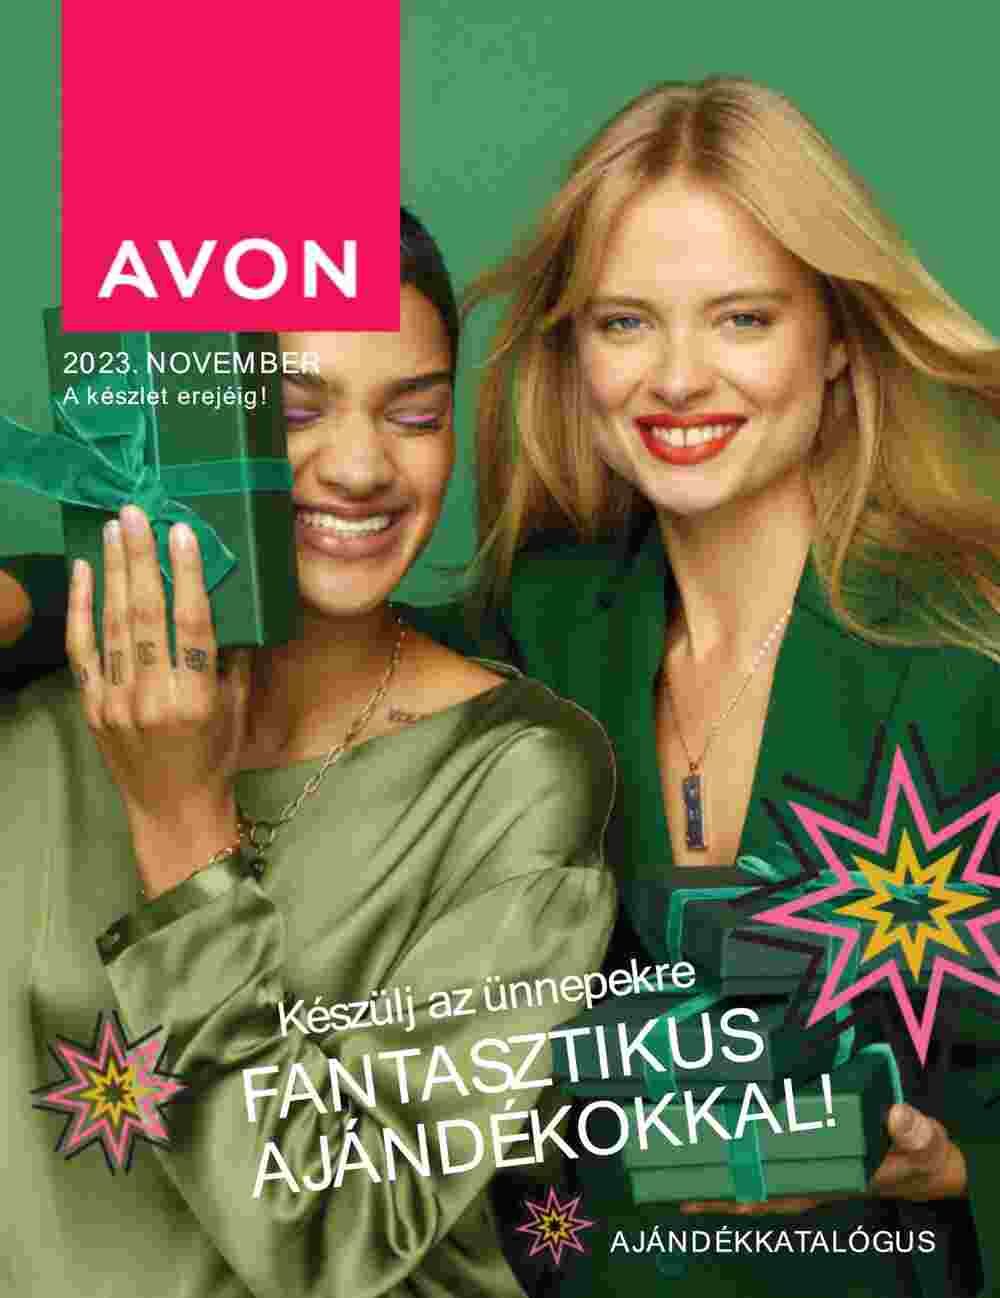 Avon akciós újság 2023.11.01-től - 1. oldal.